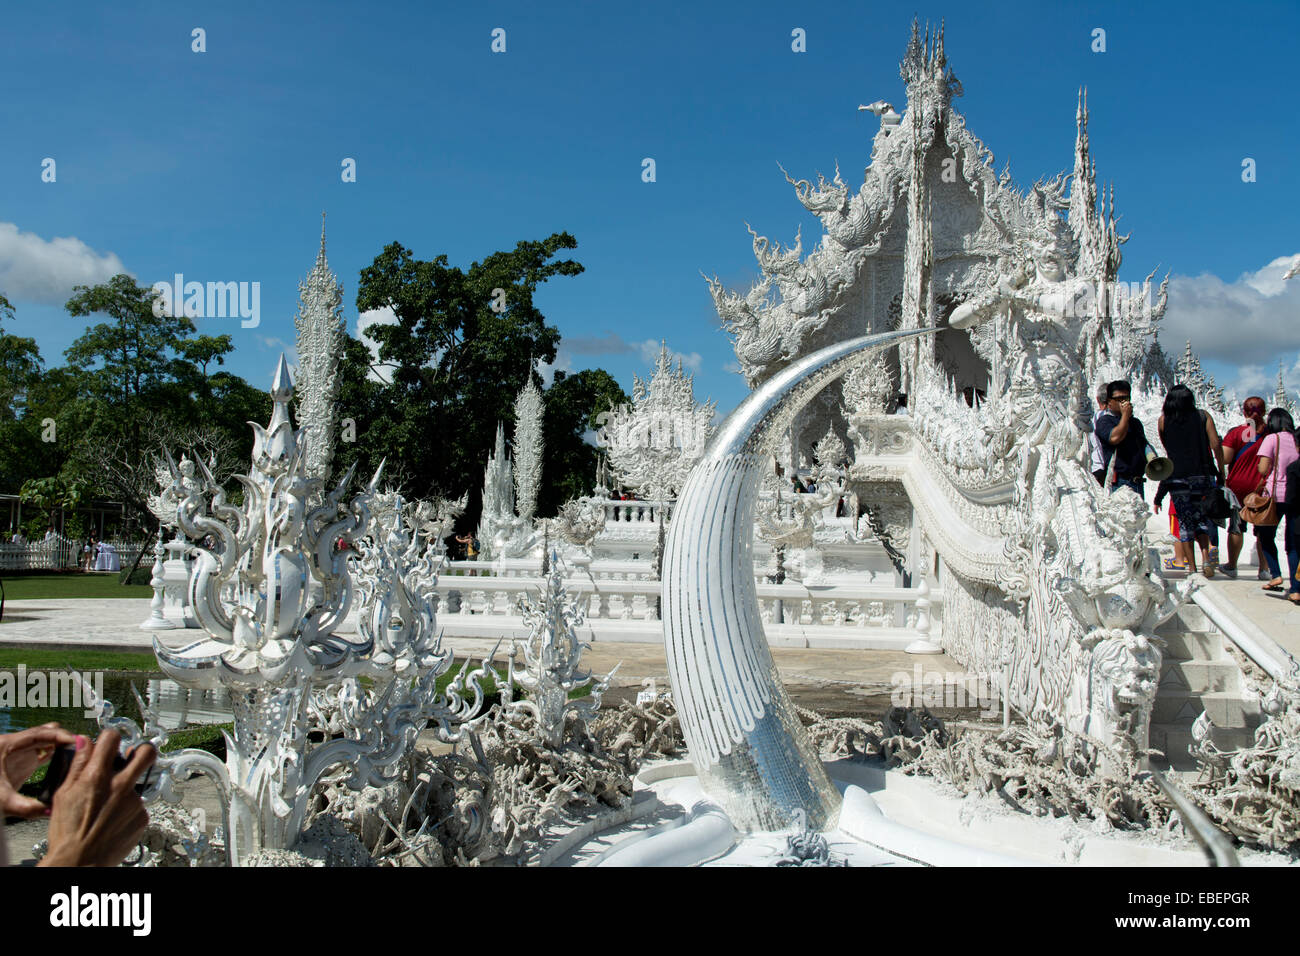 La bella Bianca tempio Wat Rong Khun, vicino a Chiang Rai, Thailandia, mostra segni di danneggiamento dovuti al maggio 2014 terremoto. Foto Stock